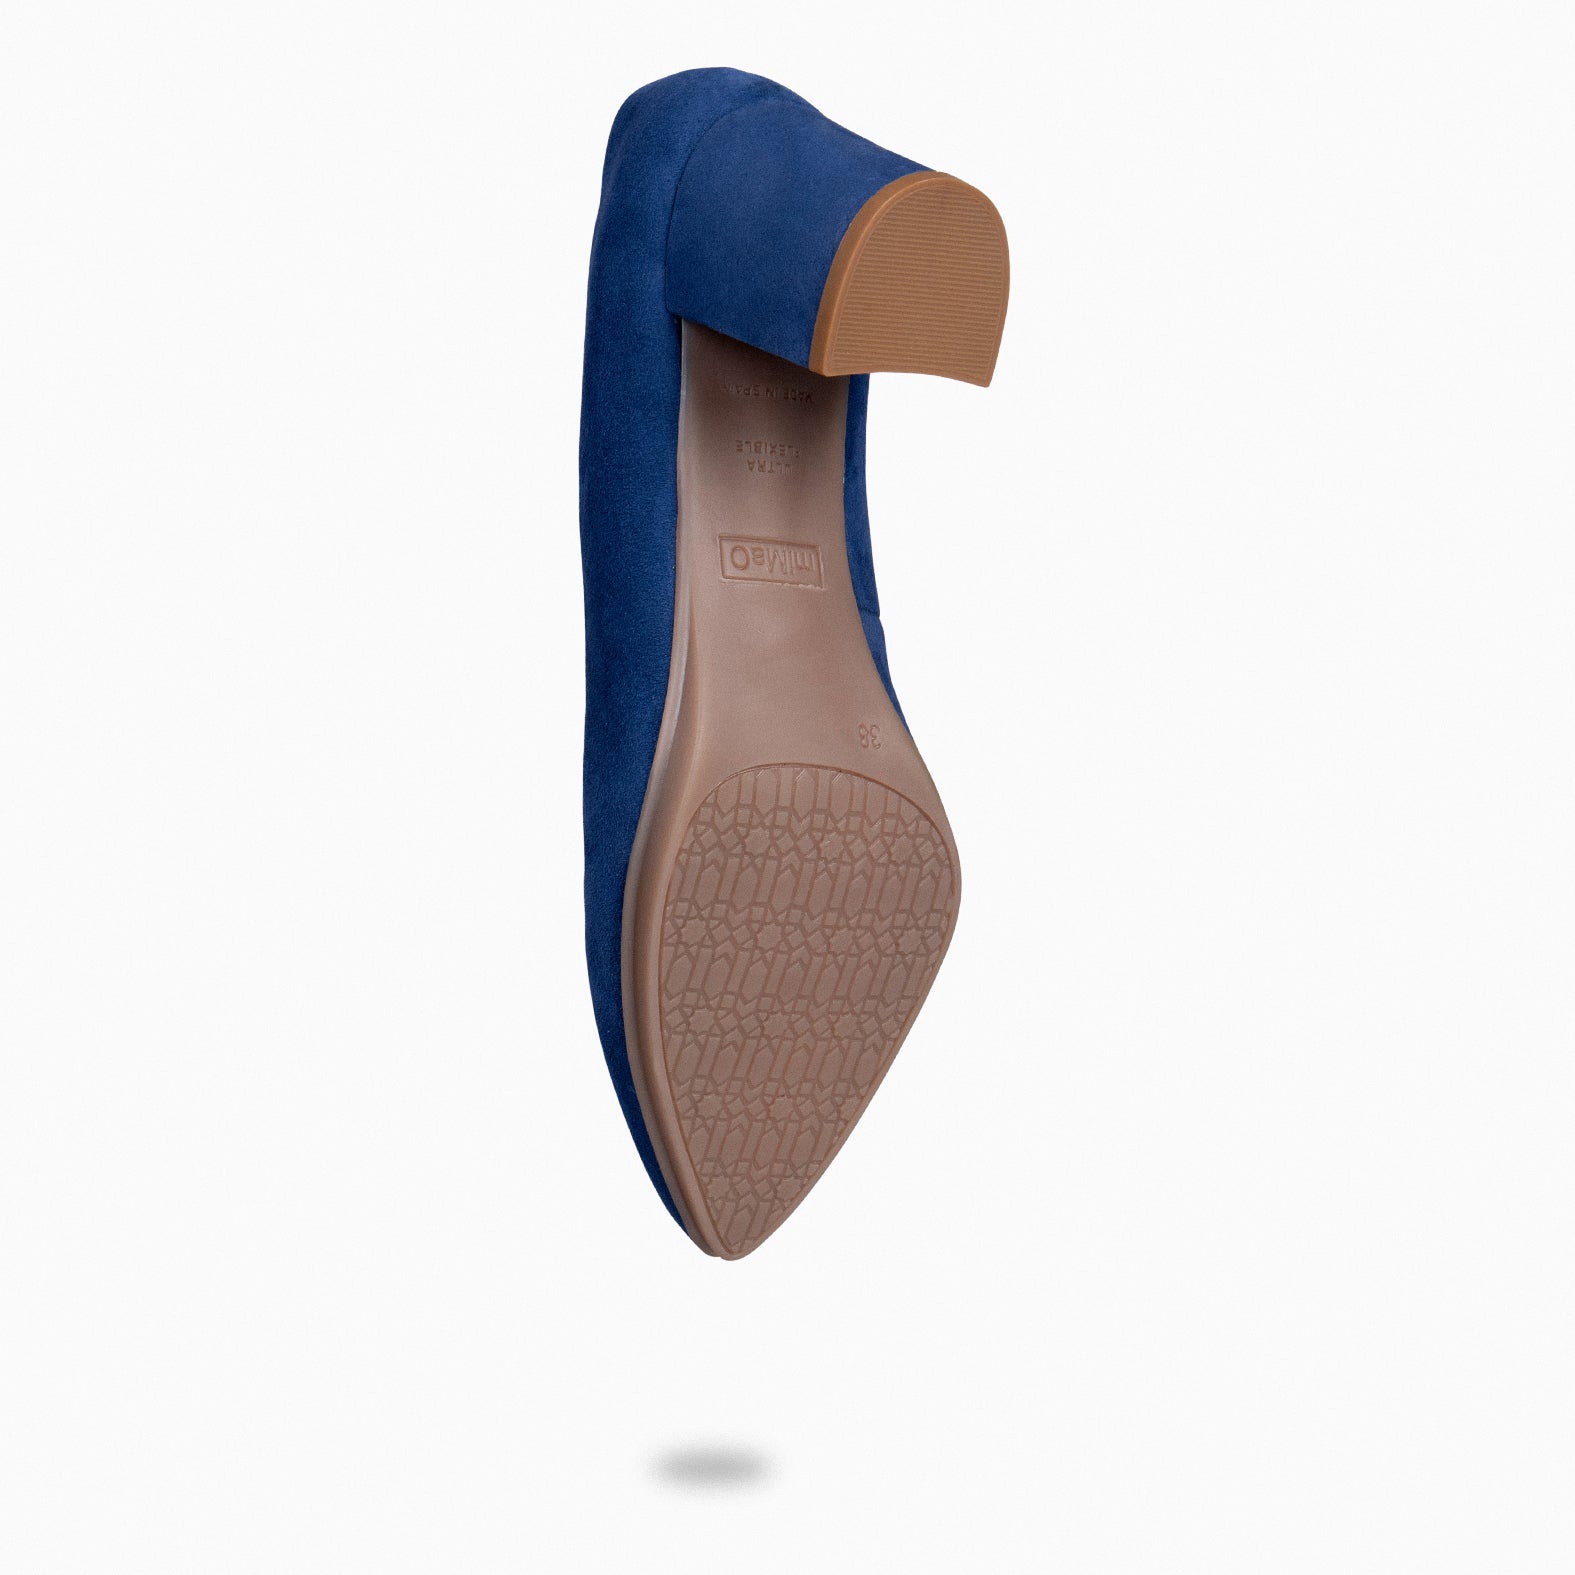 URBAN S CRYSTAL - NAVY mid heel with brooch